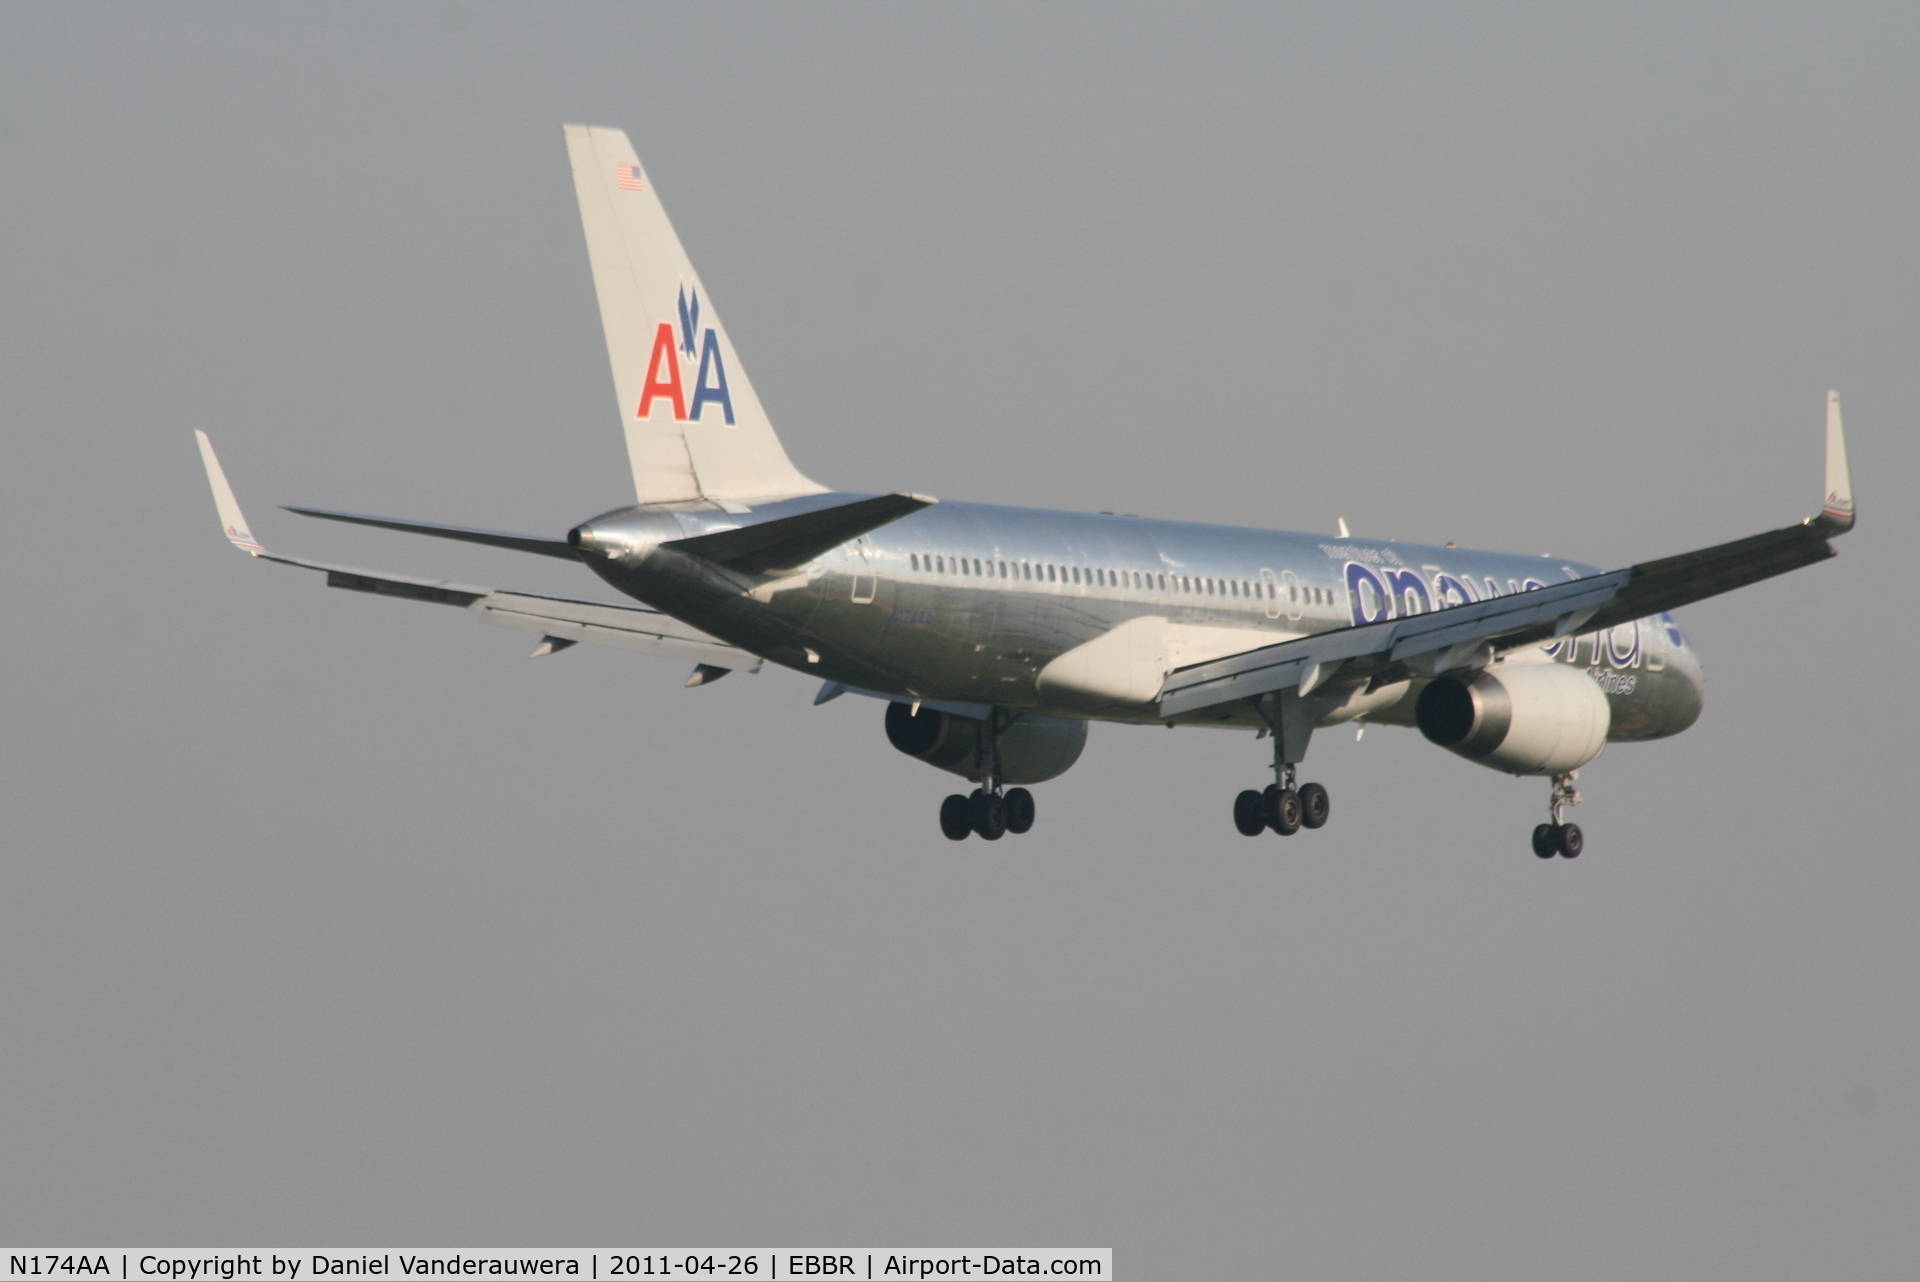 N174AA, 2002 Boeing 757-223 C/N 31308, Flight AA172 is descending to RWY 02